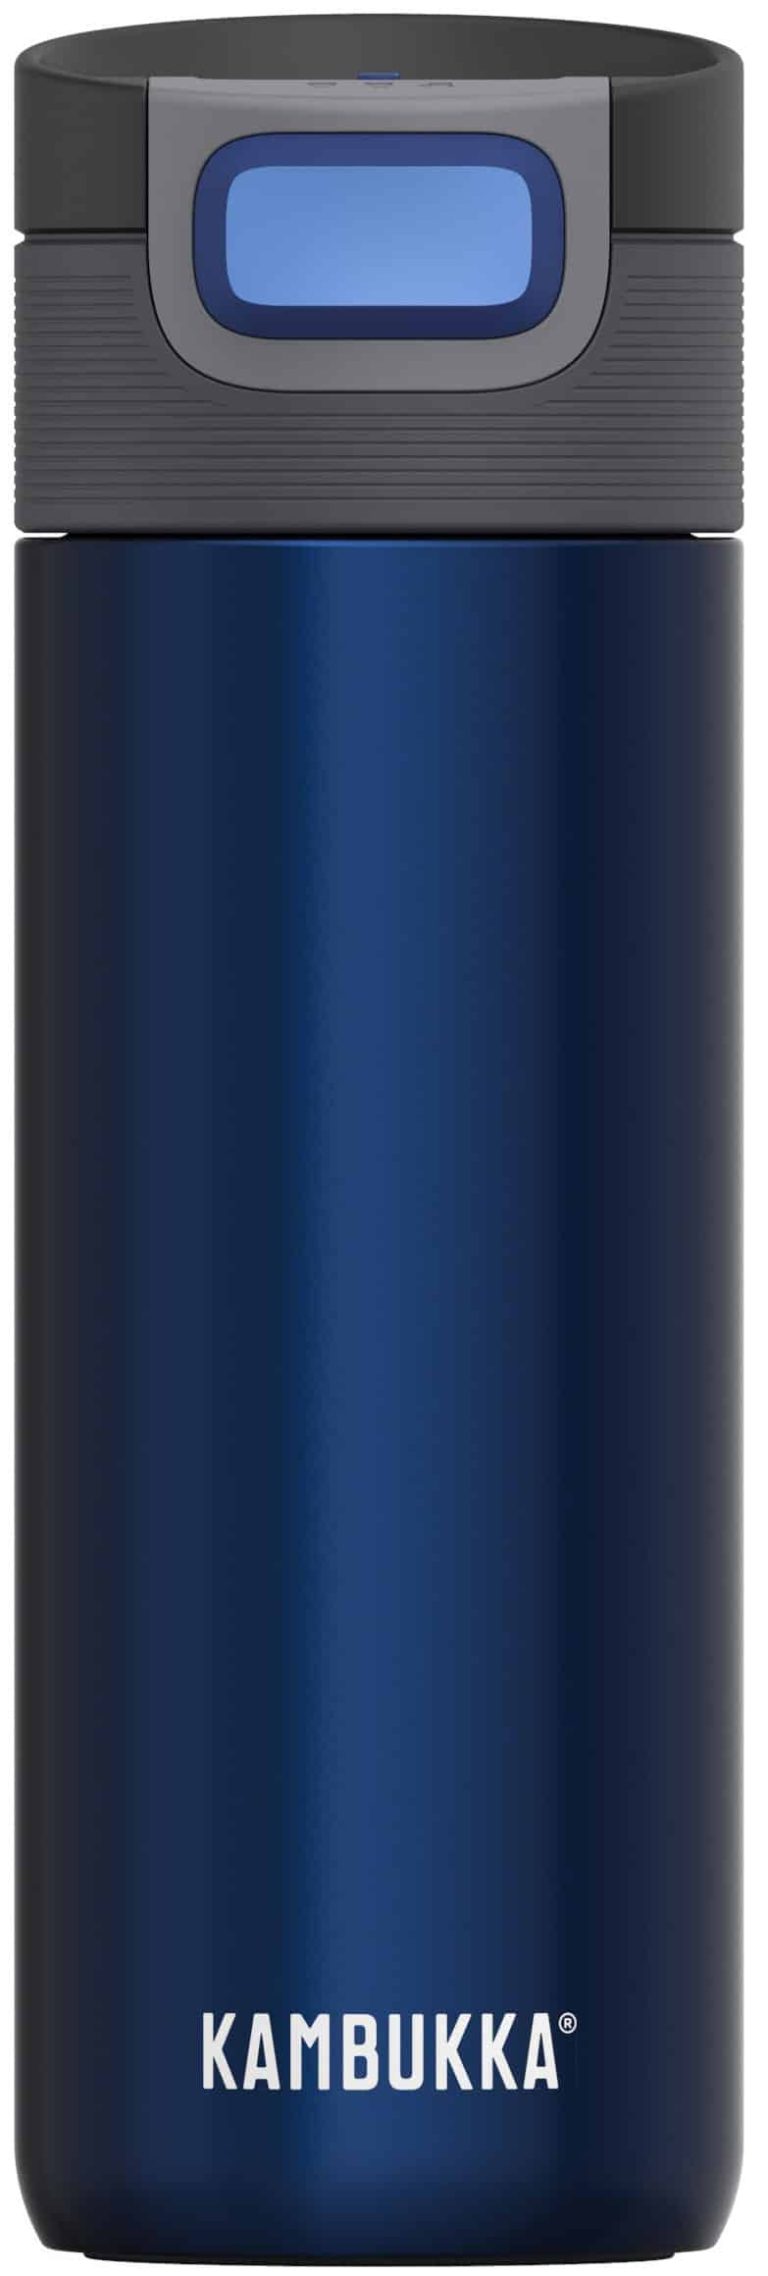 בקבוק תרמי נירוסטה כחול 500 מ״ל Kambukka Etna - בסט דיל שופ Best Deal